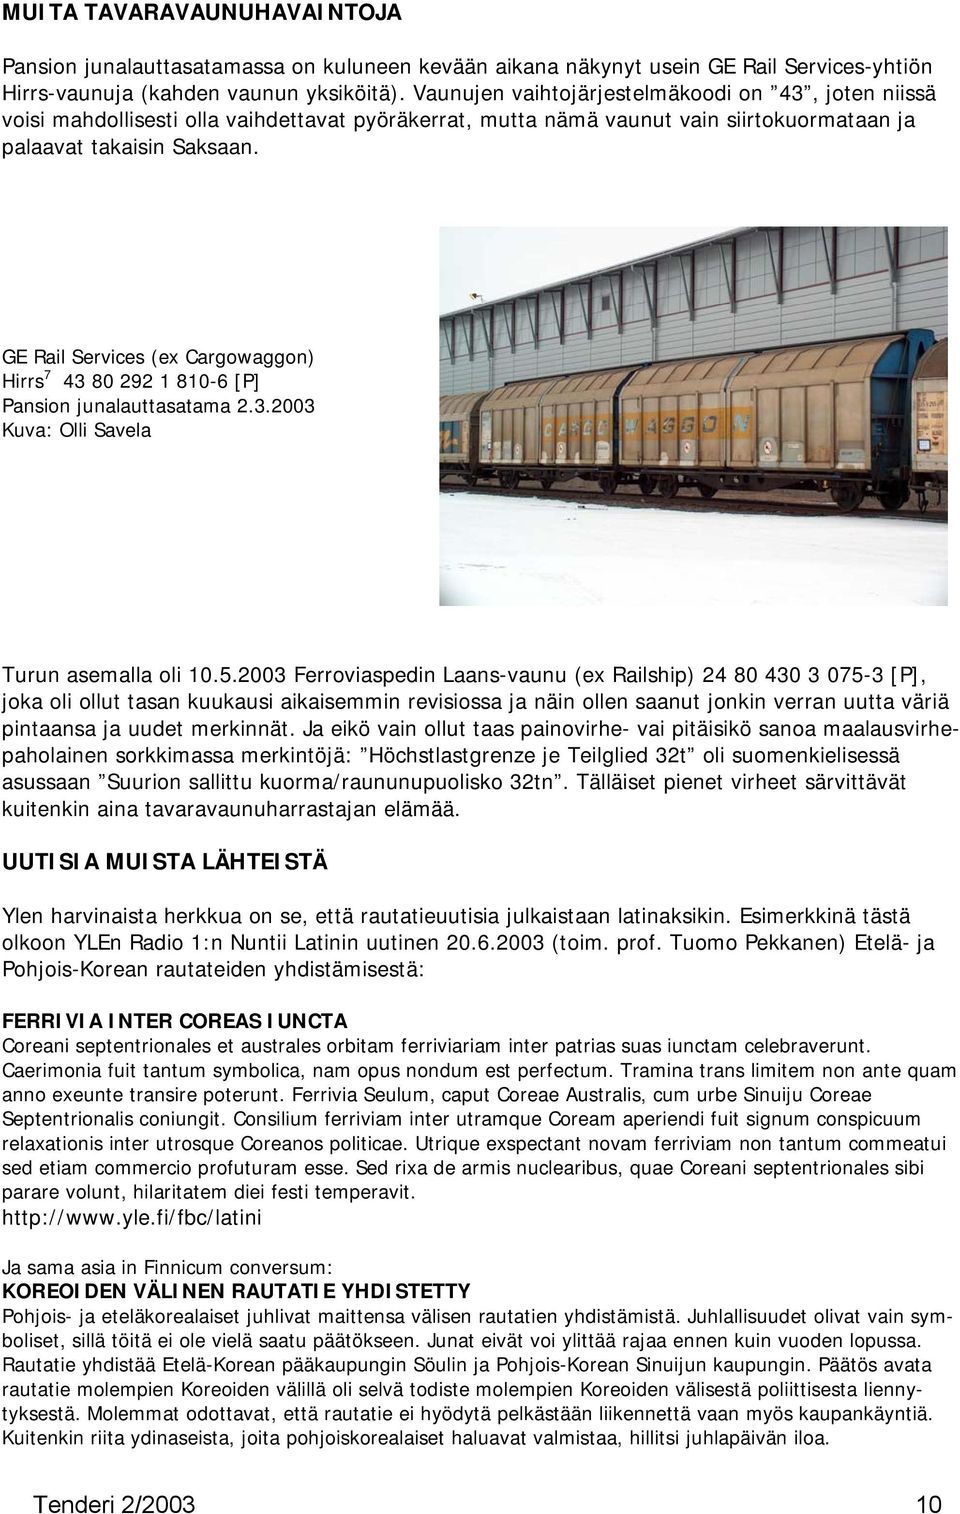 GE Rail Services (ex Cargowaggon) Hirrs 7 43 80 292 1 810-6 [P] Pansion junalauttasatama 2.3.2003 Kuva: Olli Savela Turun asemalla oli 10.5.